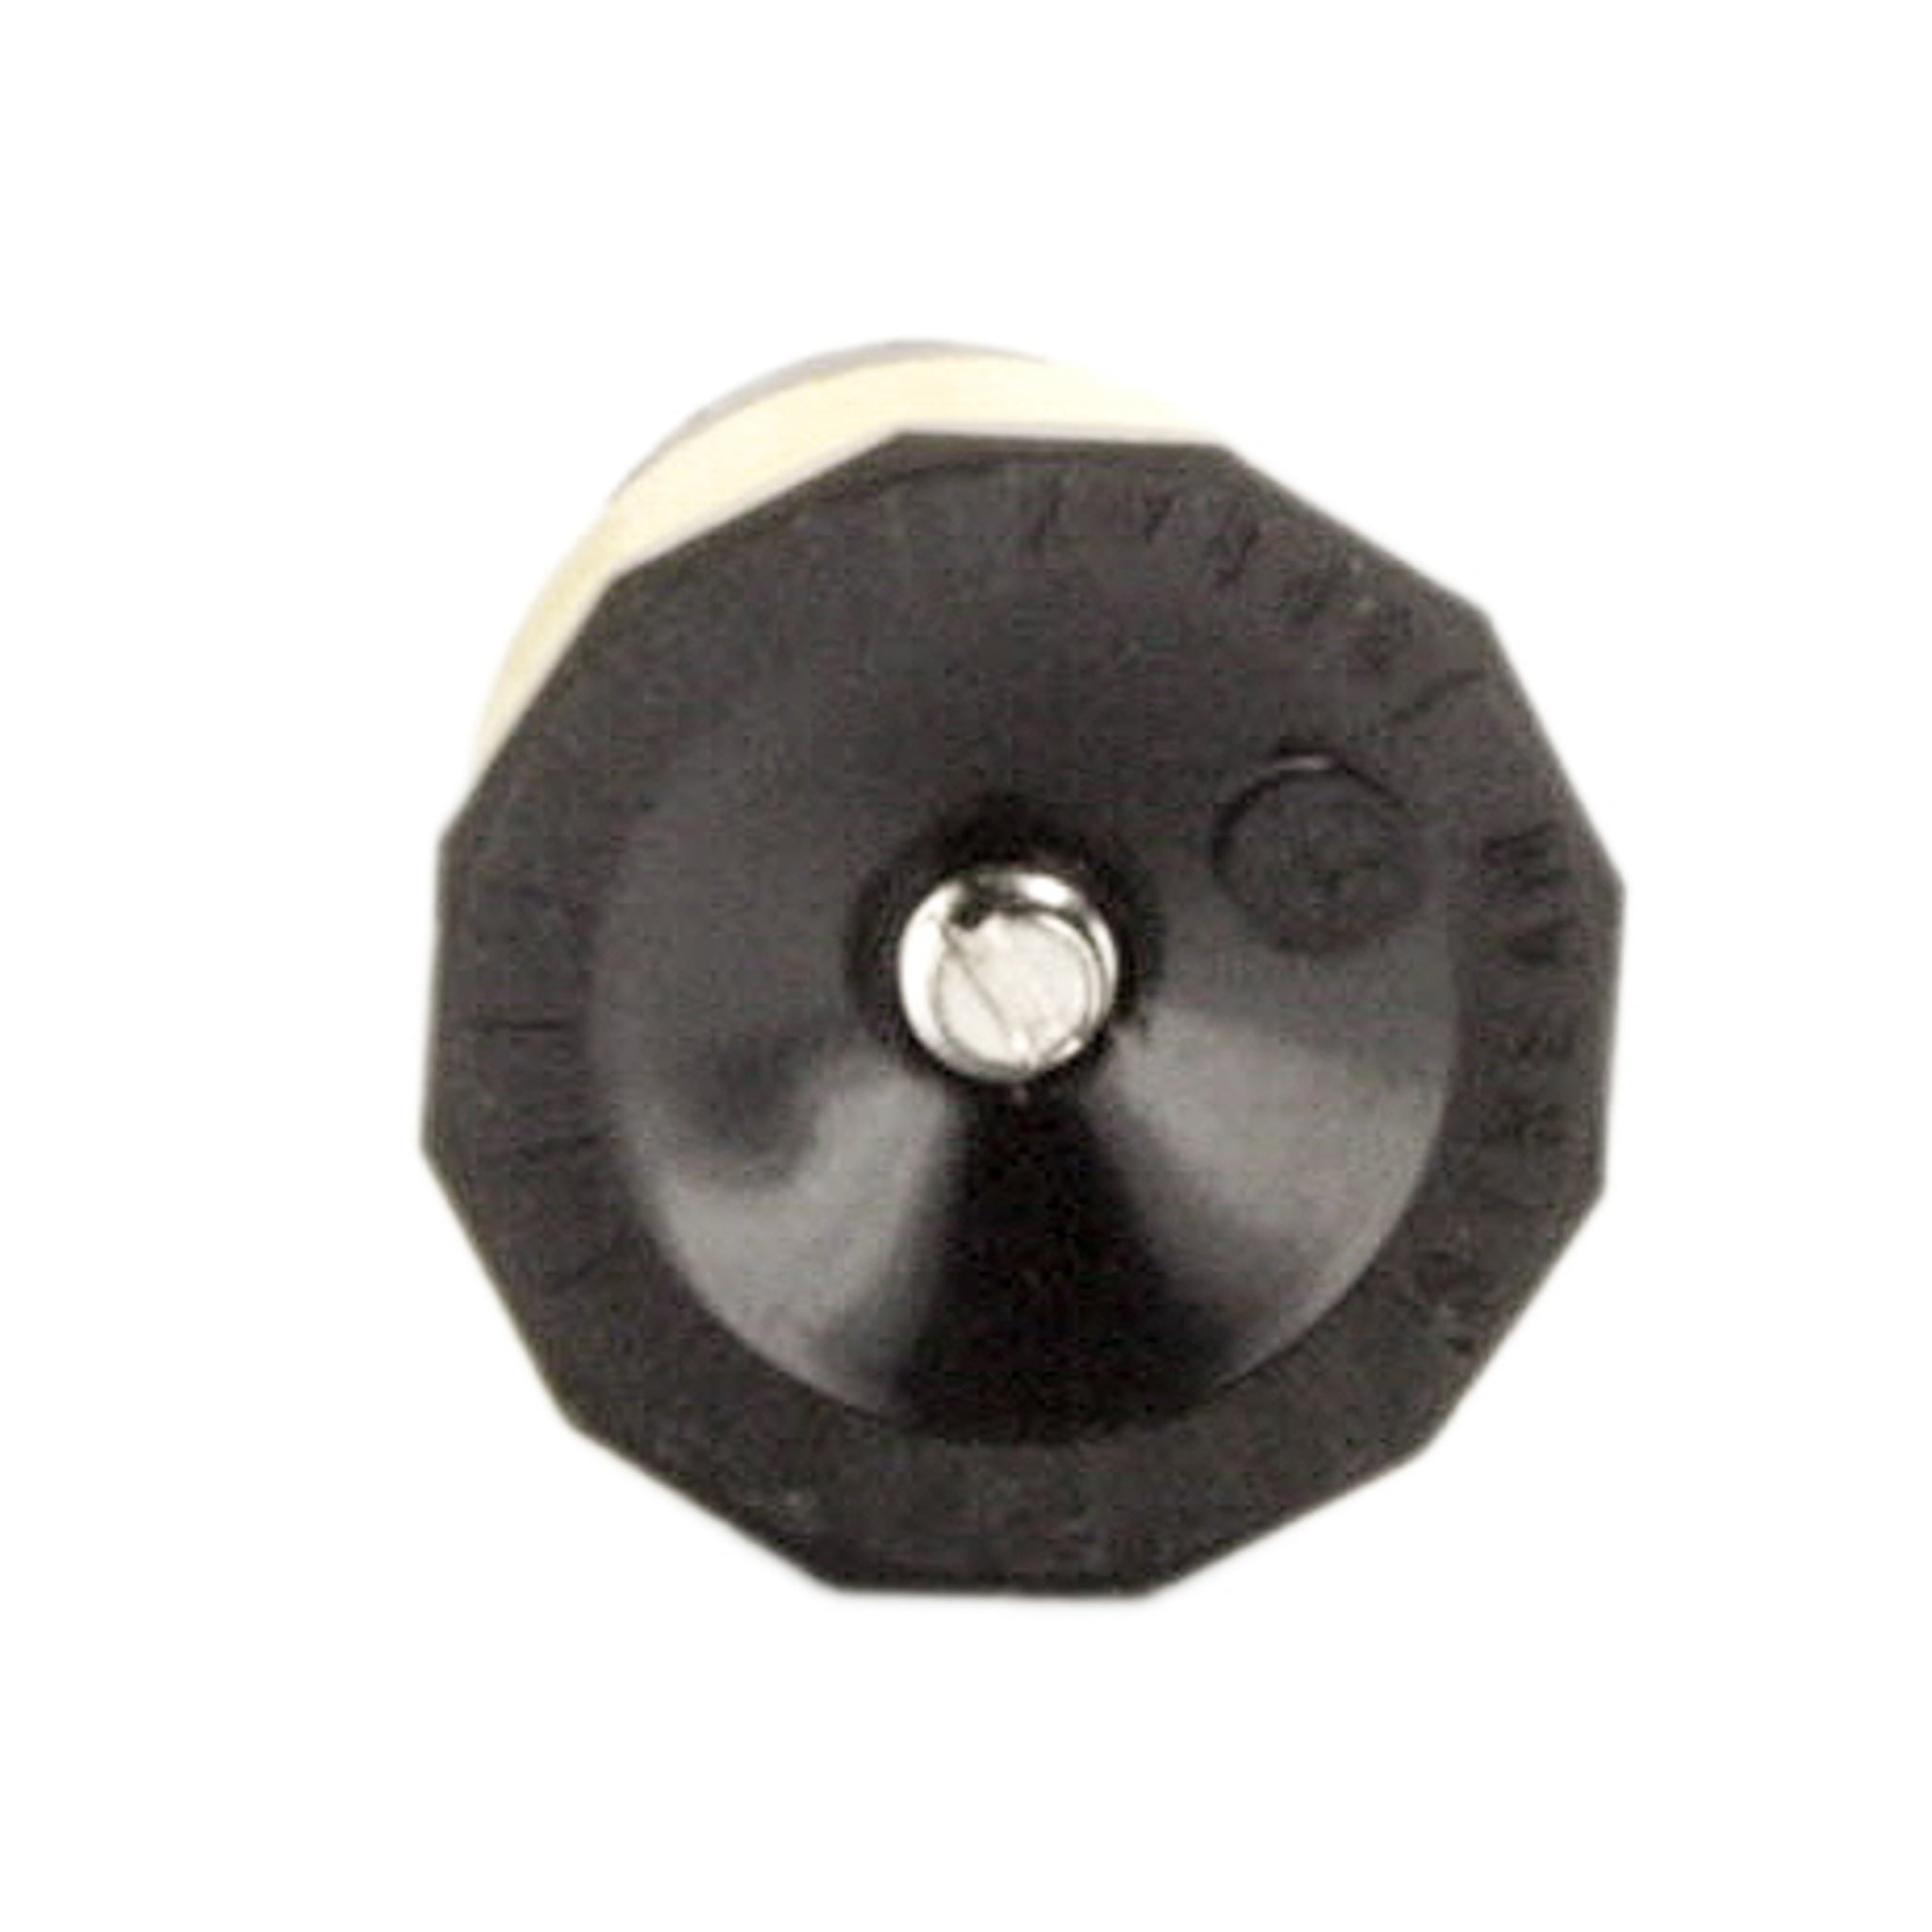 Toro - 89-1491 - 35-SSF-PC, Stream Spray Nozzle, Pressure Compensating, FULL Circle, 35 degree